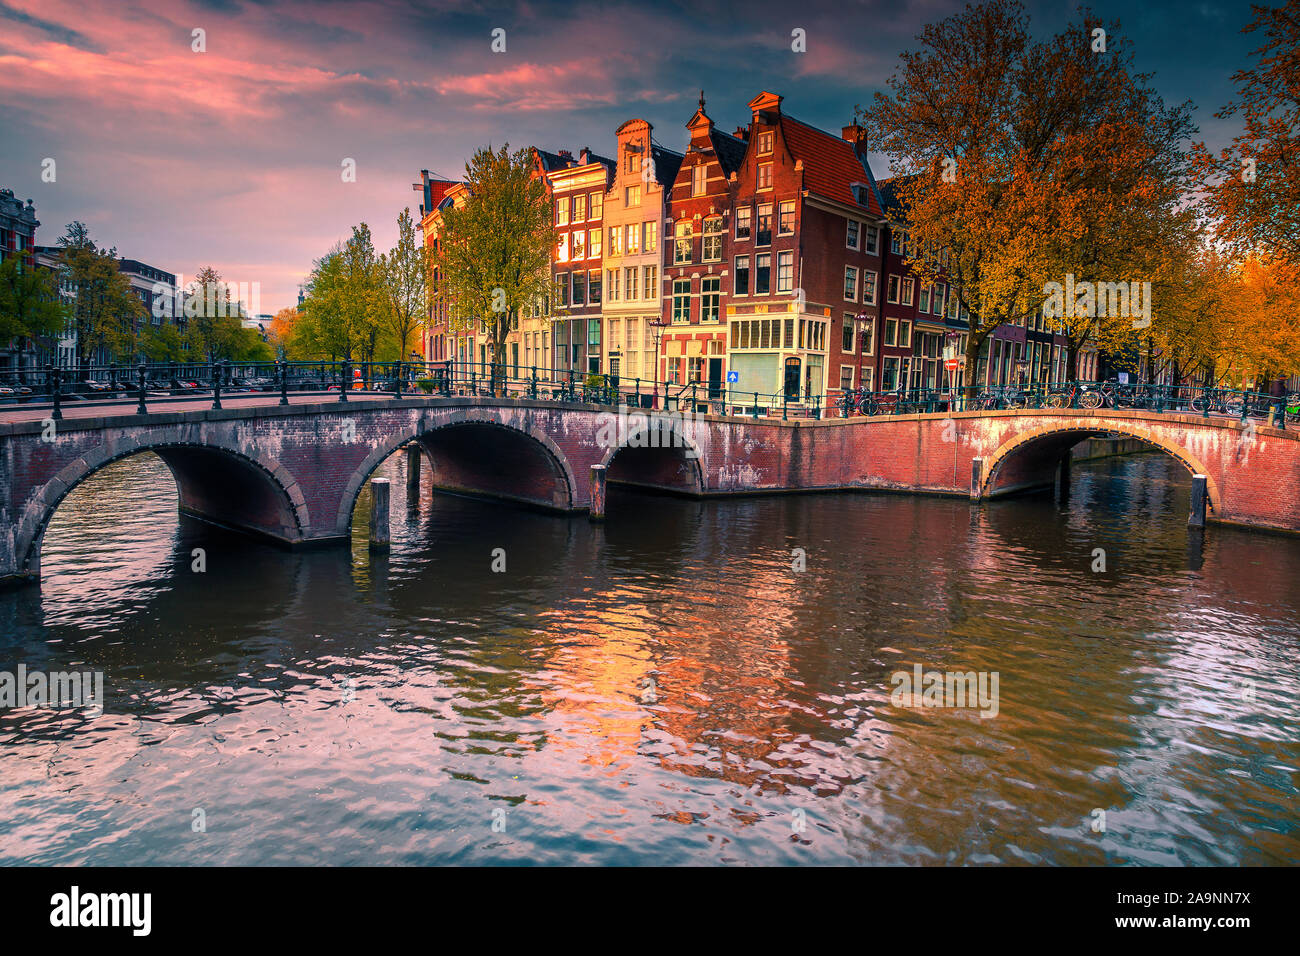 Malerische Amsterdamer Stadtbild mit erstaunlichen Wasser, Kanäle, Brücken und Gebäuden. Attraktive touristische und Reisen Standorte, Niederlande, Europa Stockfoto